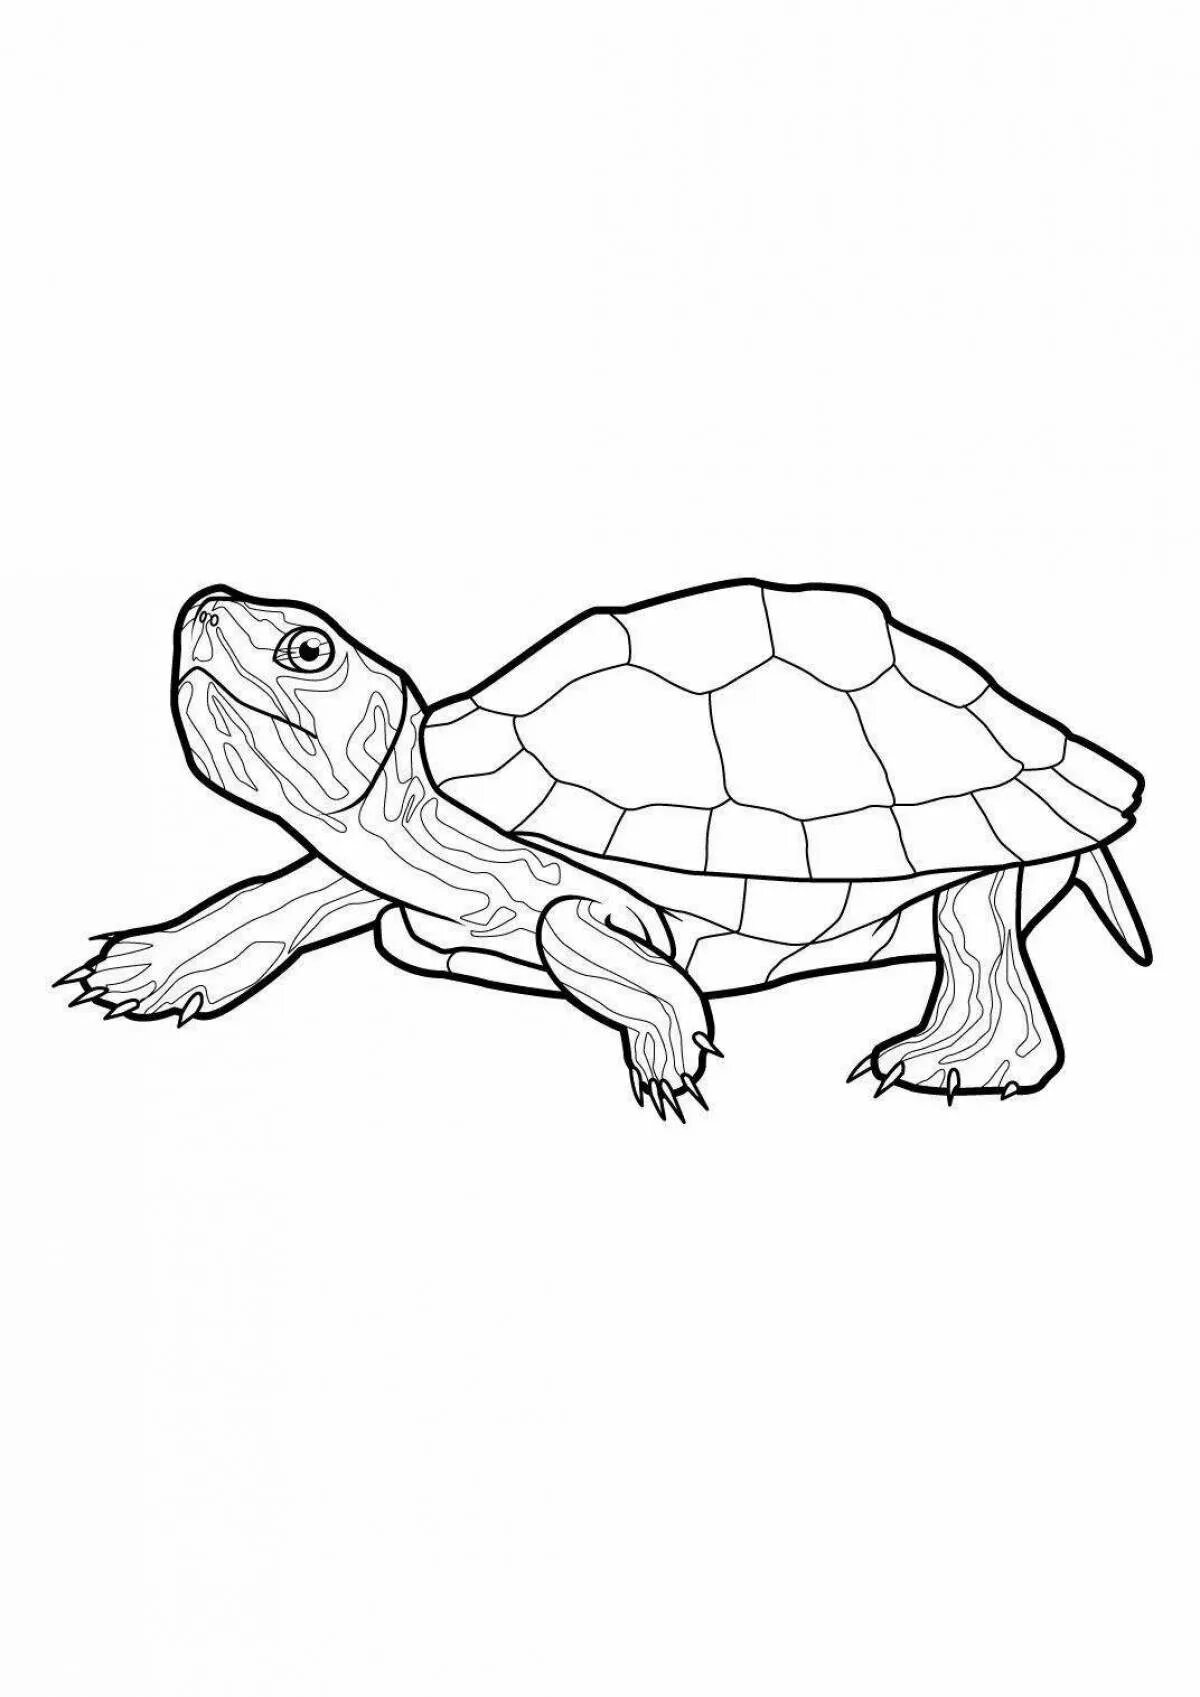 Красноухая черепаха раскраска. Раскраска черепаха красноухая черепаха. Набросок красноухой черепахи. Черепаха рисунок для детей карандашом.